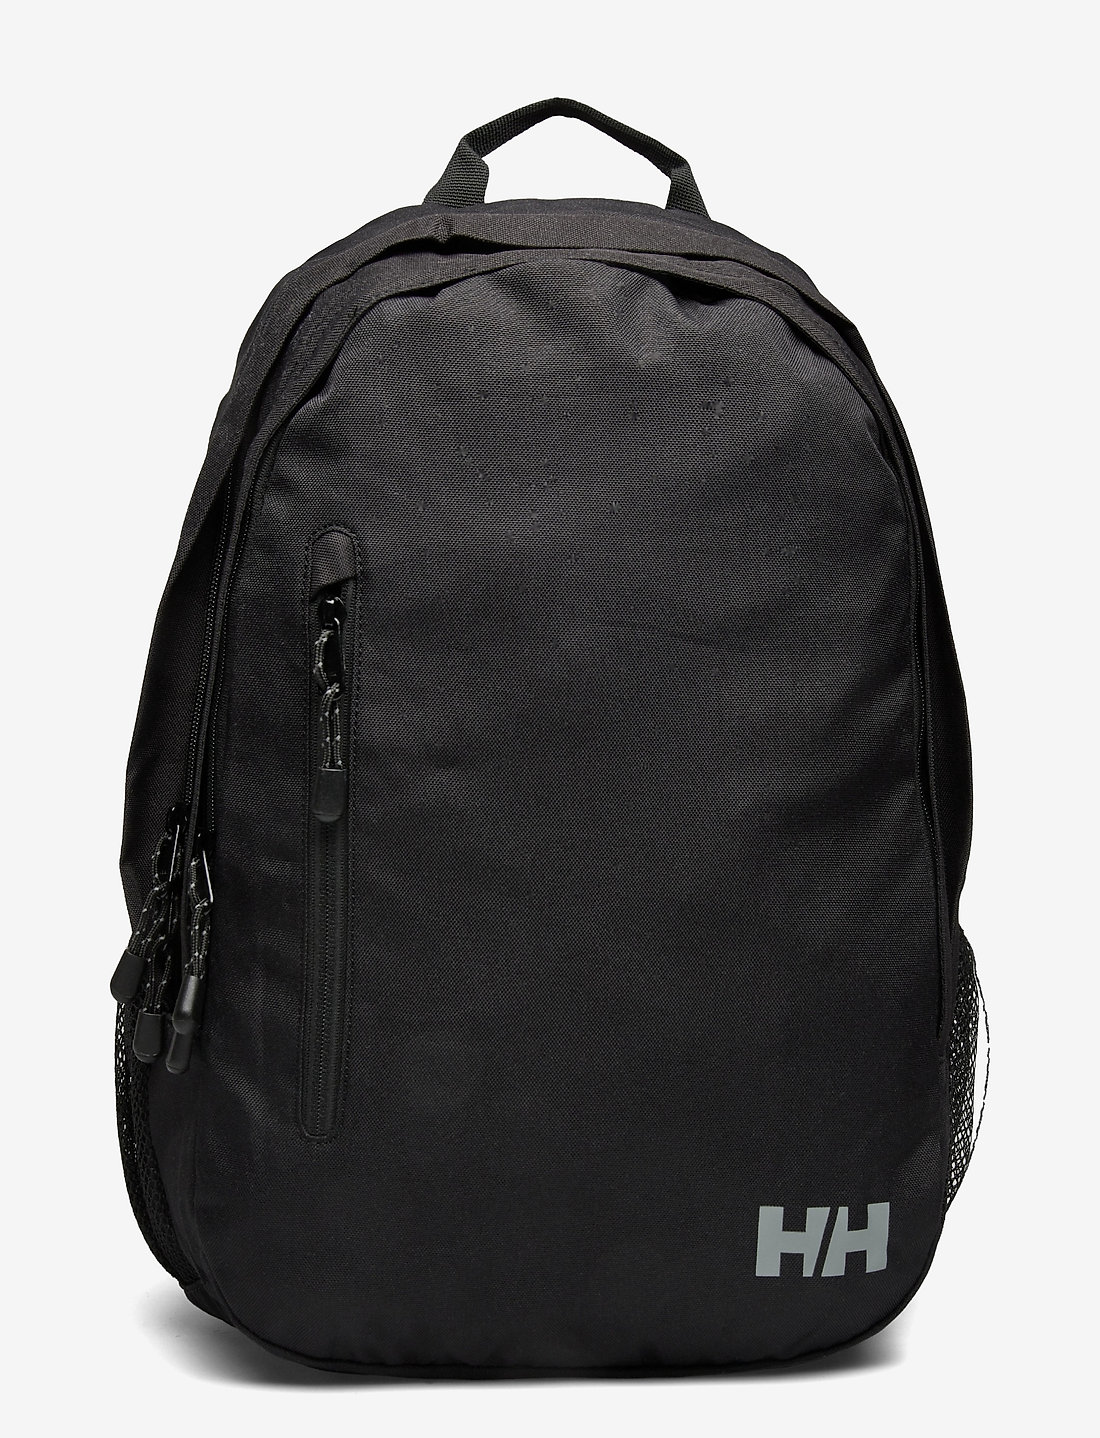 Helly Hansen Dublin 2.0 Backpack - Backpacks